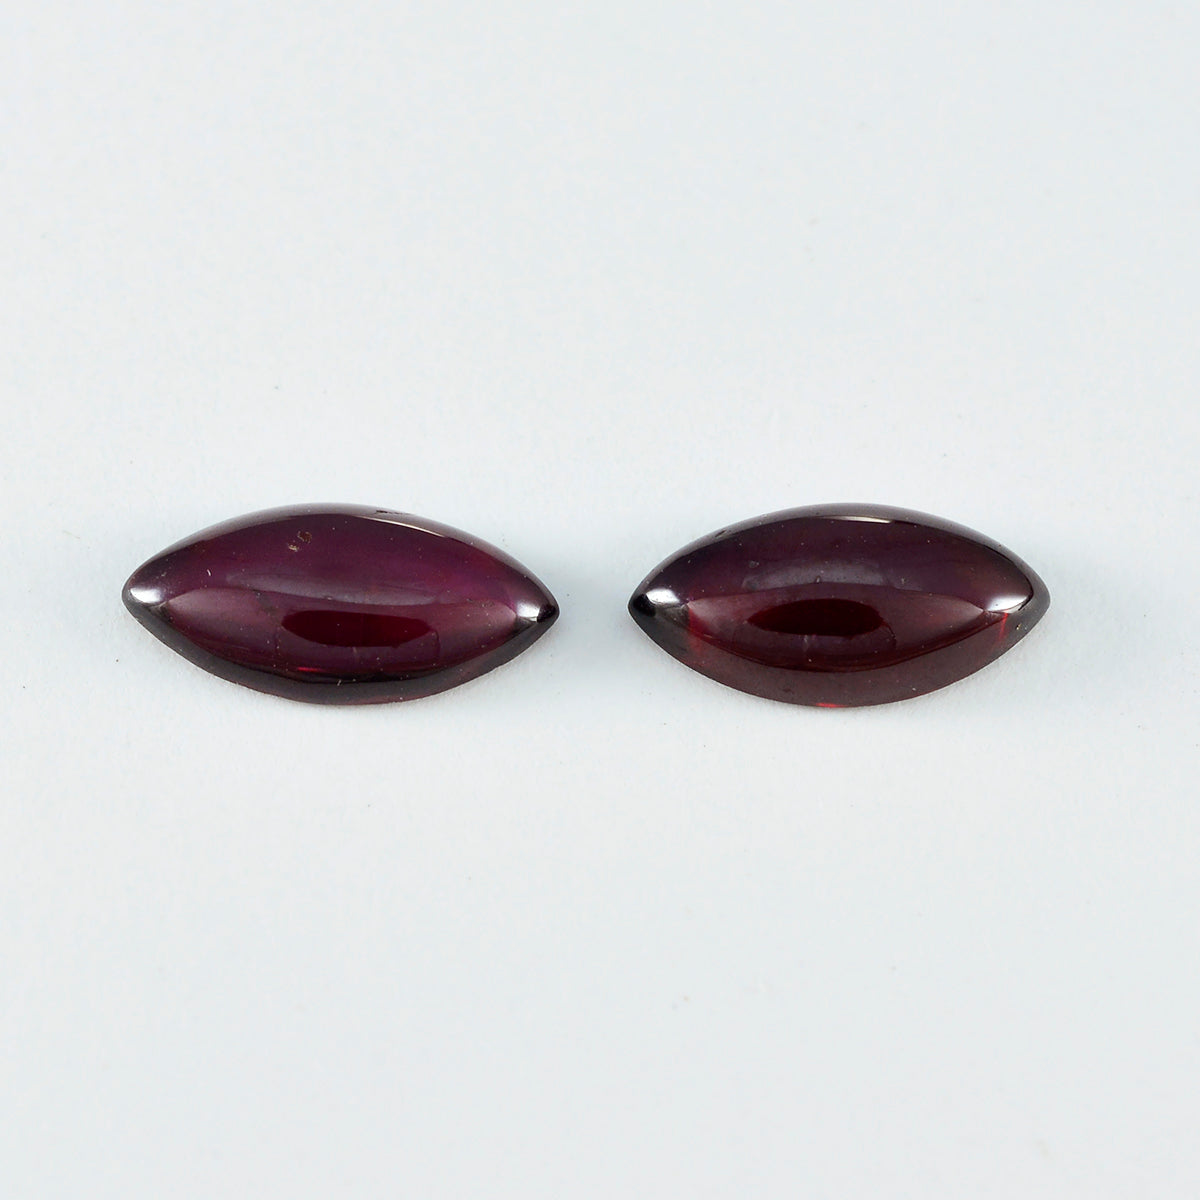 Riyogems 1 Stück roter Granat-Cabochon, 10 x 20 mm, Marquise-Form, hochwertige Edelsteine